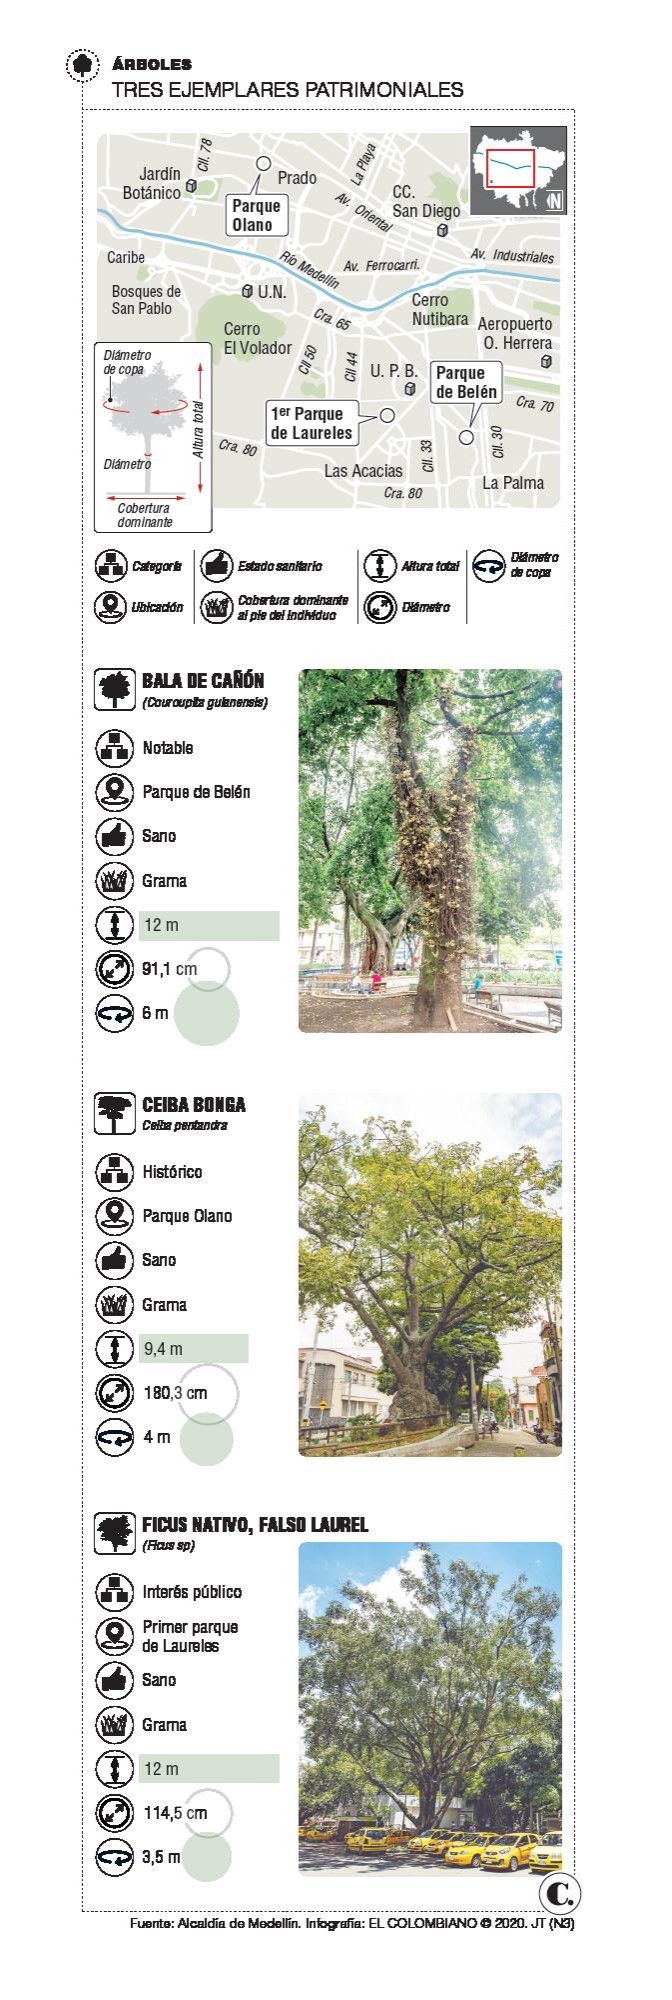 Qué dirían los árboles de Medellín si hablaran